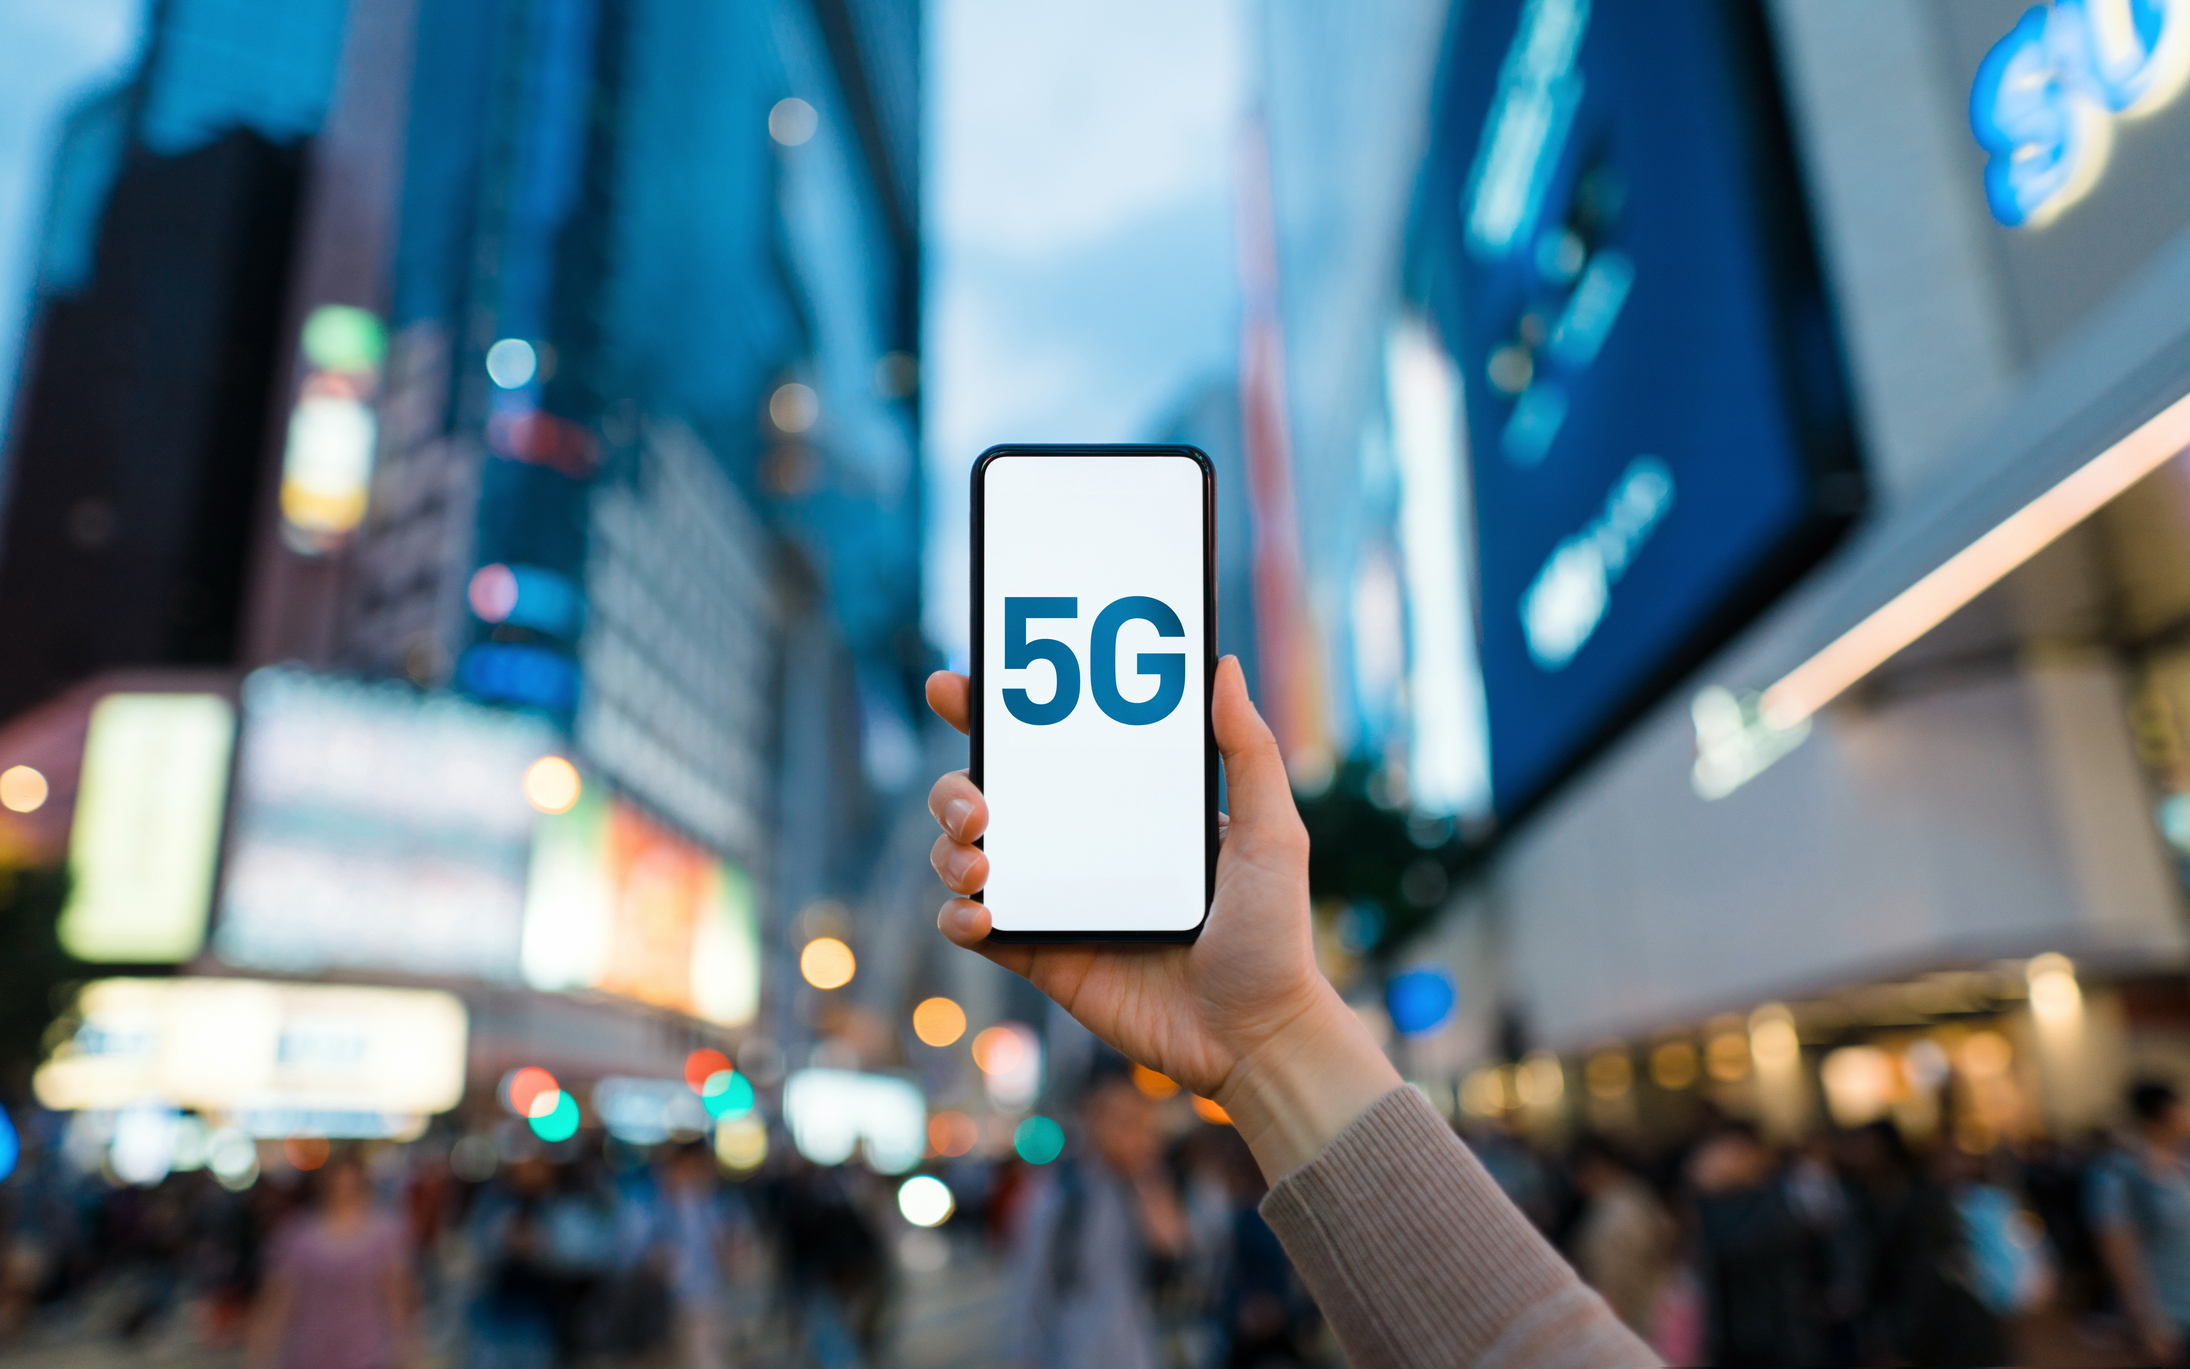 Studiu: Aproape jumătate dintre români vor să-şi cumpere un telefon nou cu tehnologie 5G